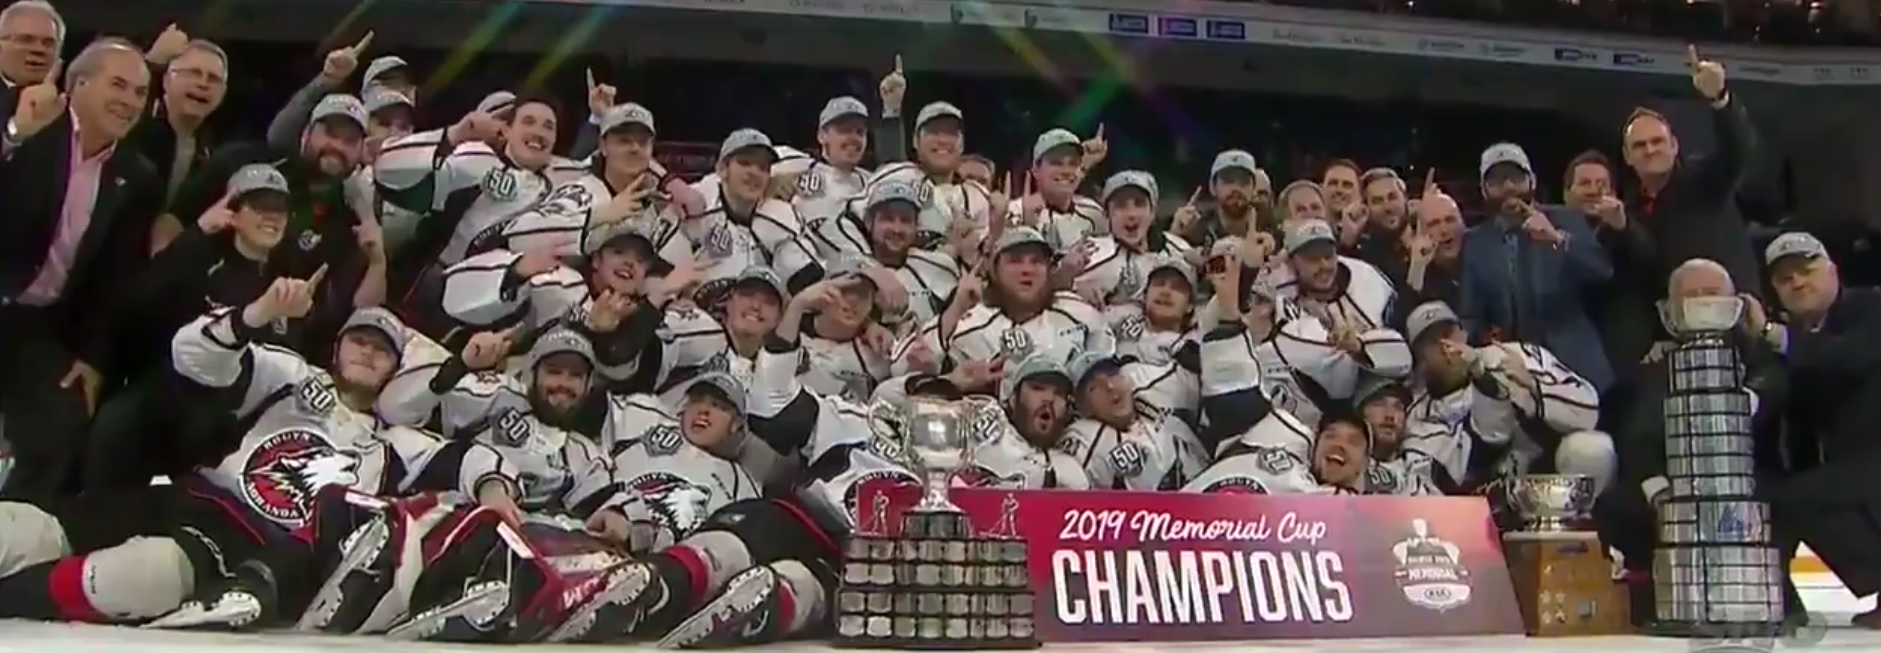 VIDEO - Les champions de la Coupe Memorial 2019, les Huskies de Rouyn-Noranda, sur Twitter  (CHL)